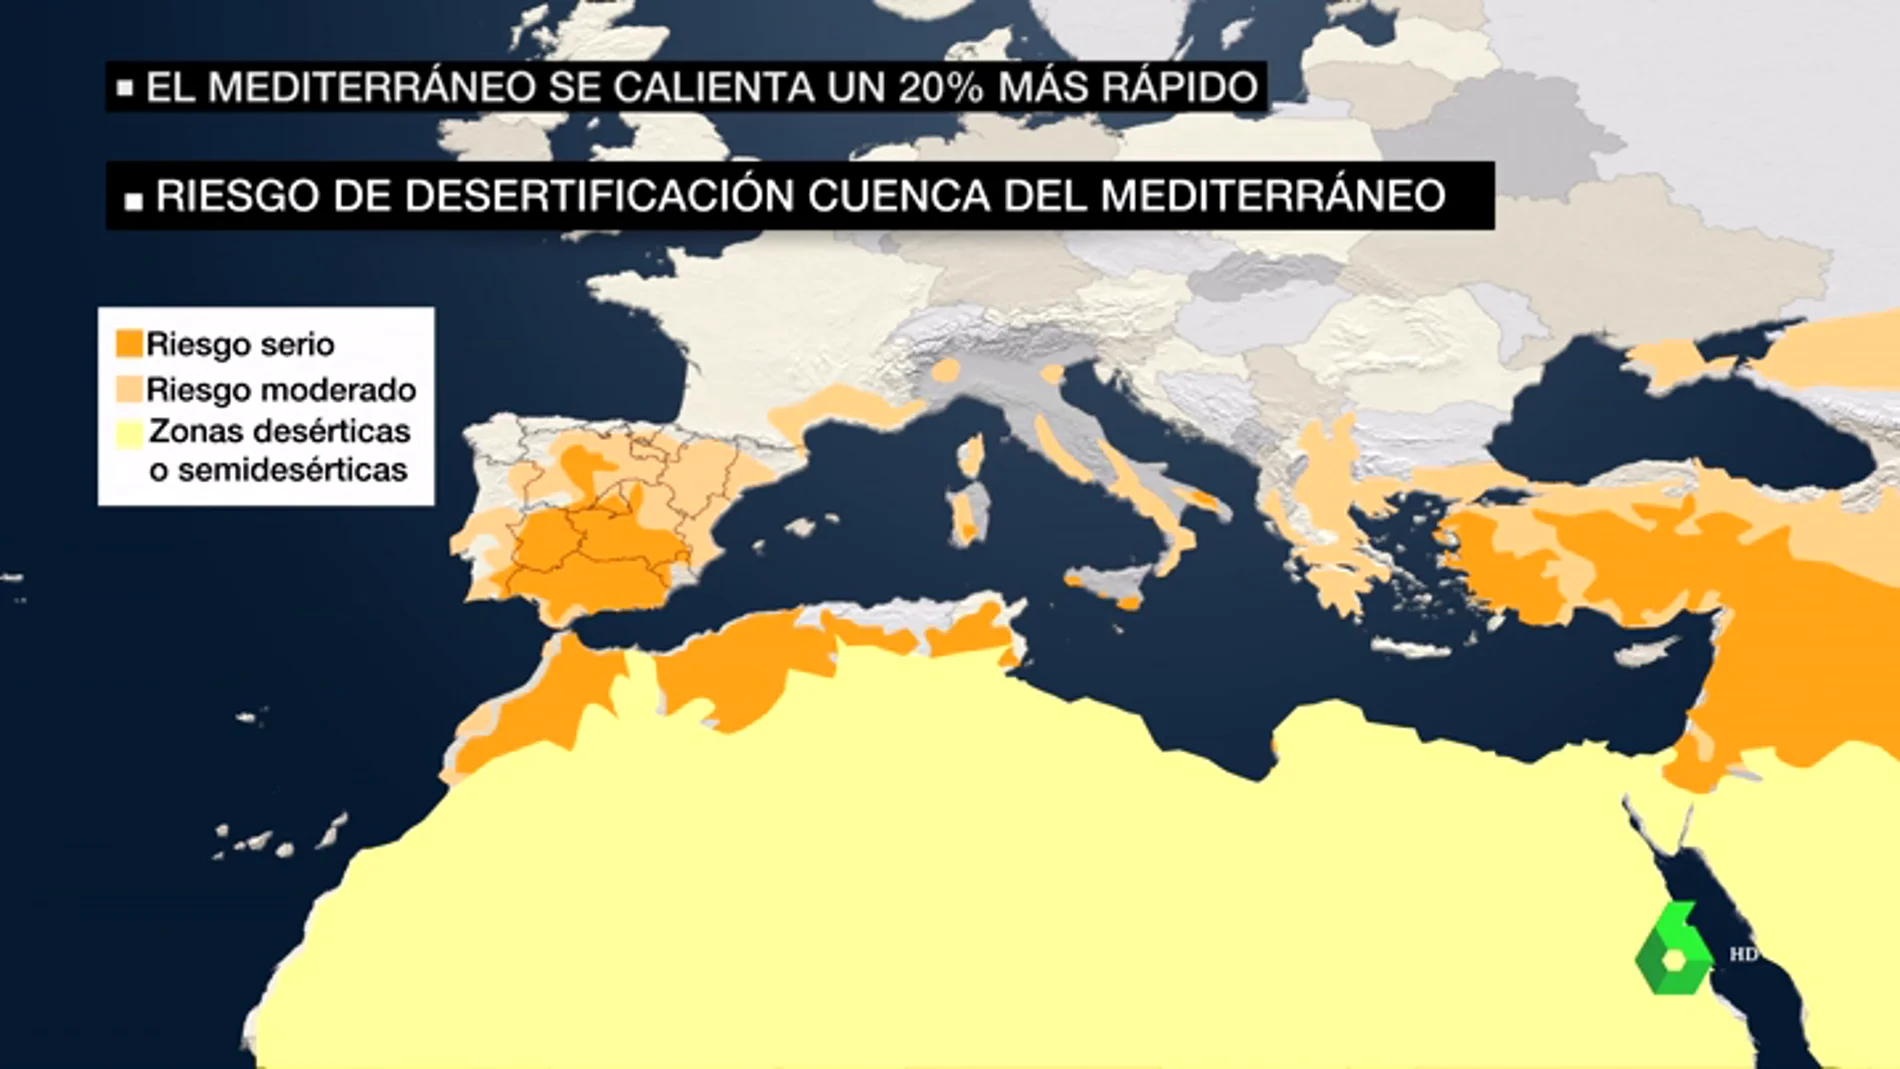 La Cuenca del Mediterráneo, en riesgo de desertificación: se calienta un 20% más rápido que el resto del mundo